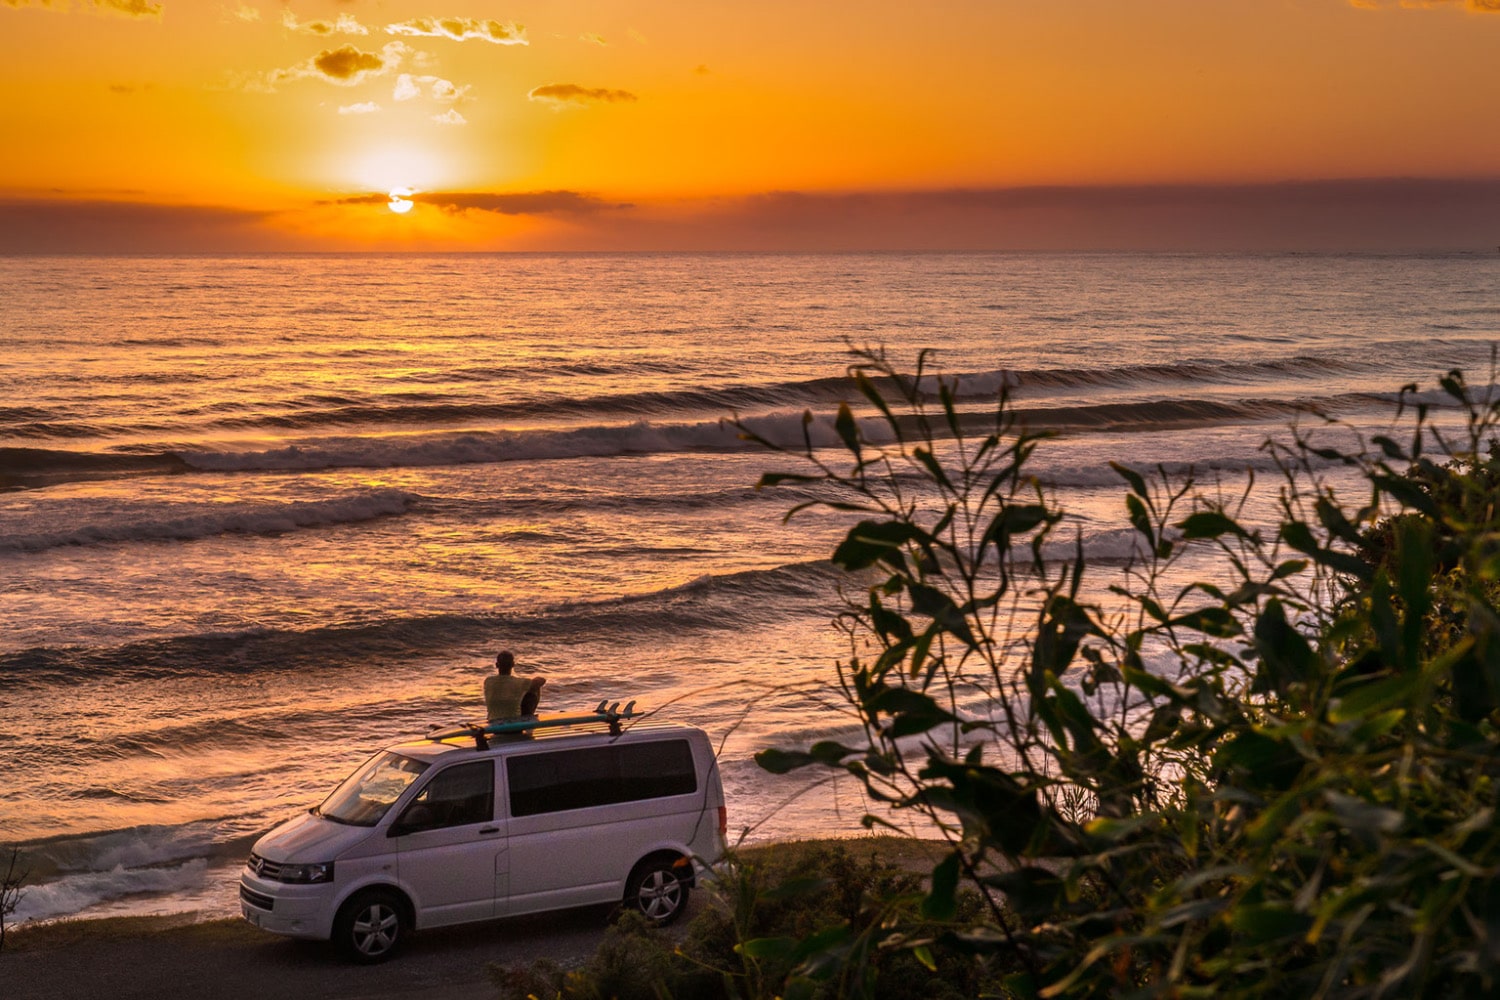 Un homme adepte de la vanlife regarde un coucher de soleil sur le toit de son véhicule aménagé.